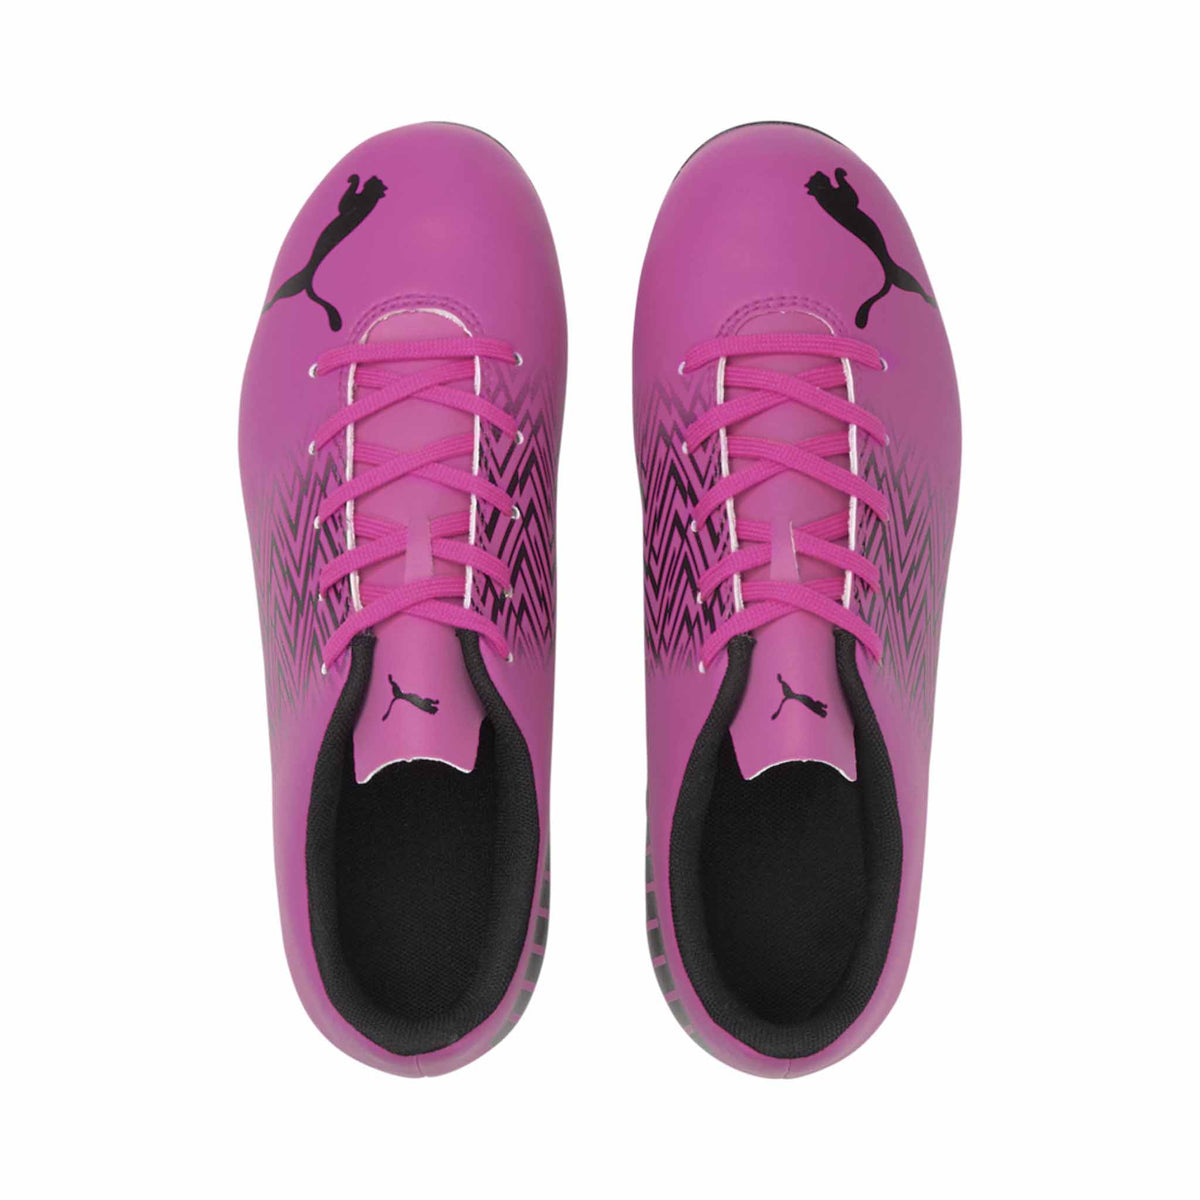 Puma Tacto FG/AG Junior chaussures de soccer enfant Rose / Noir vue de haut